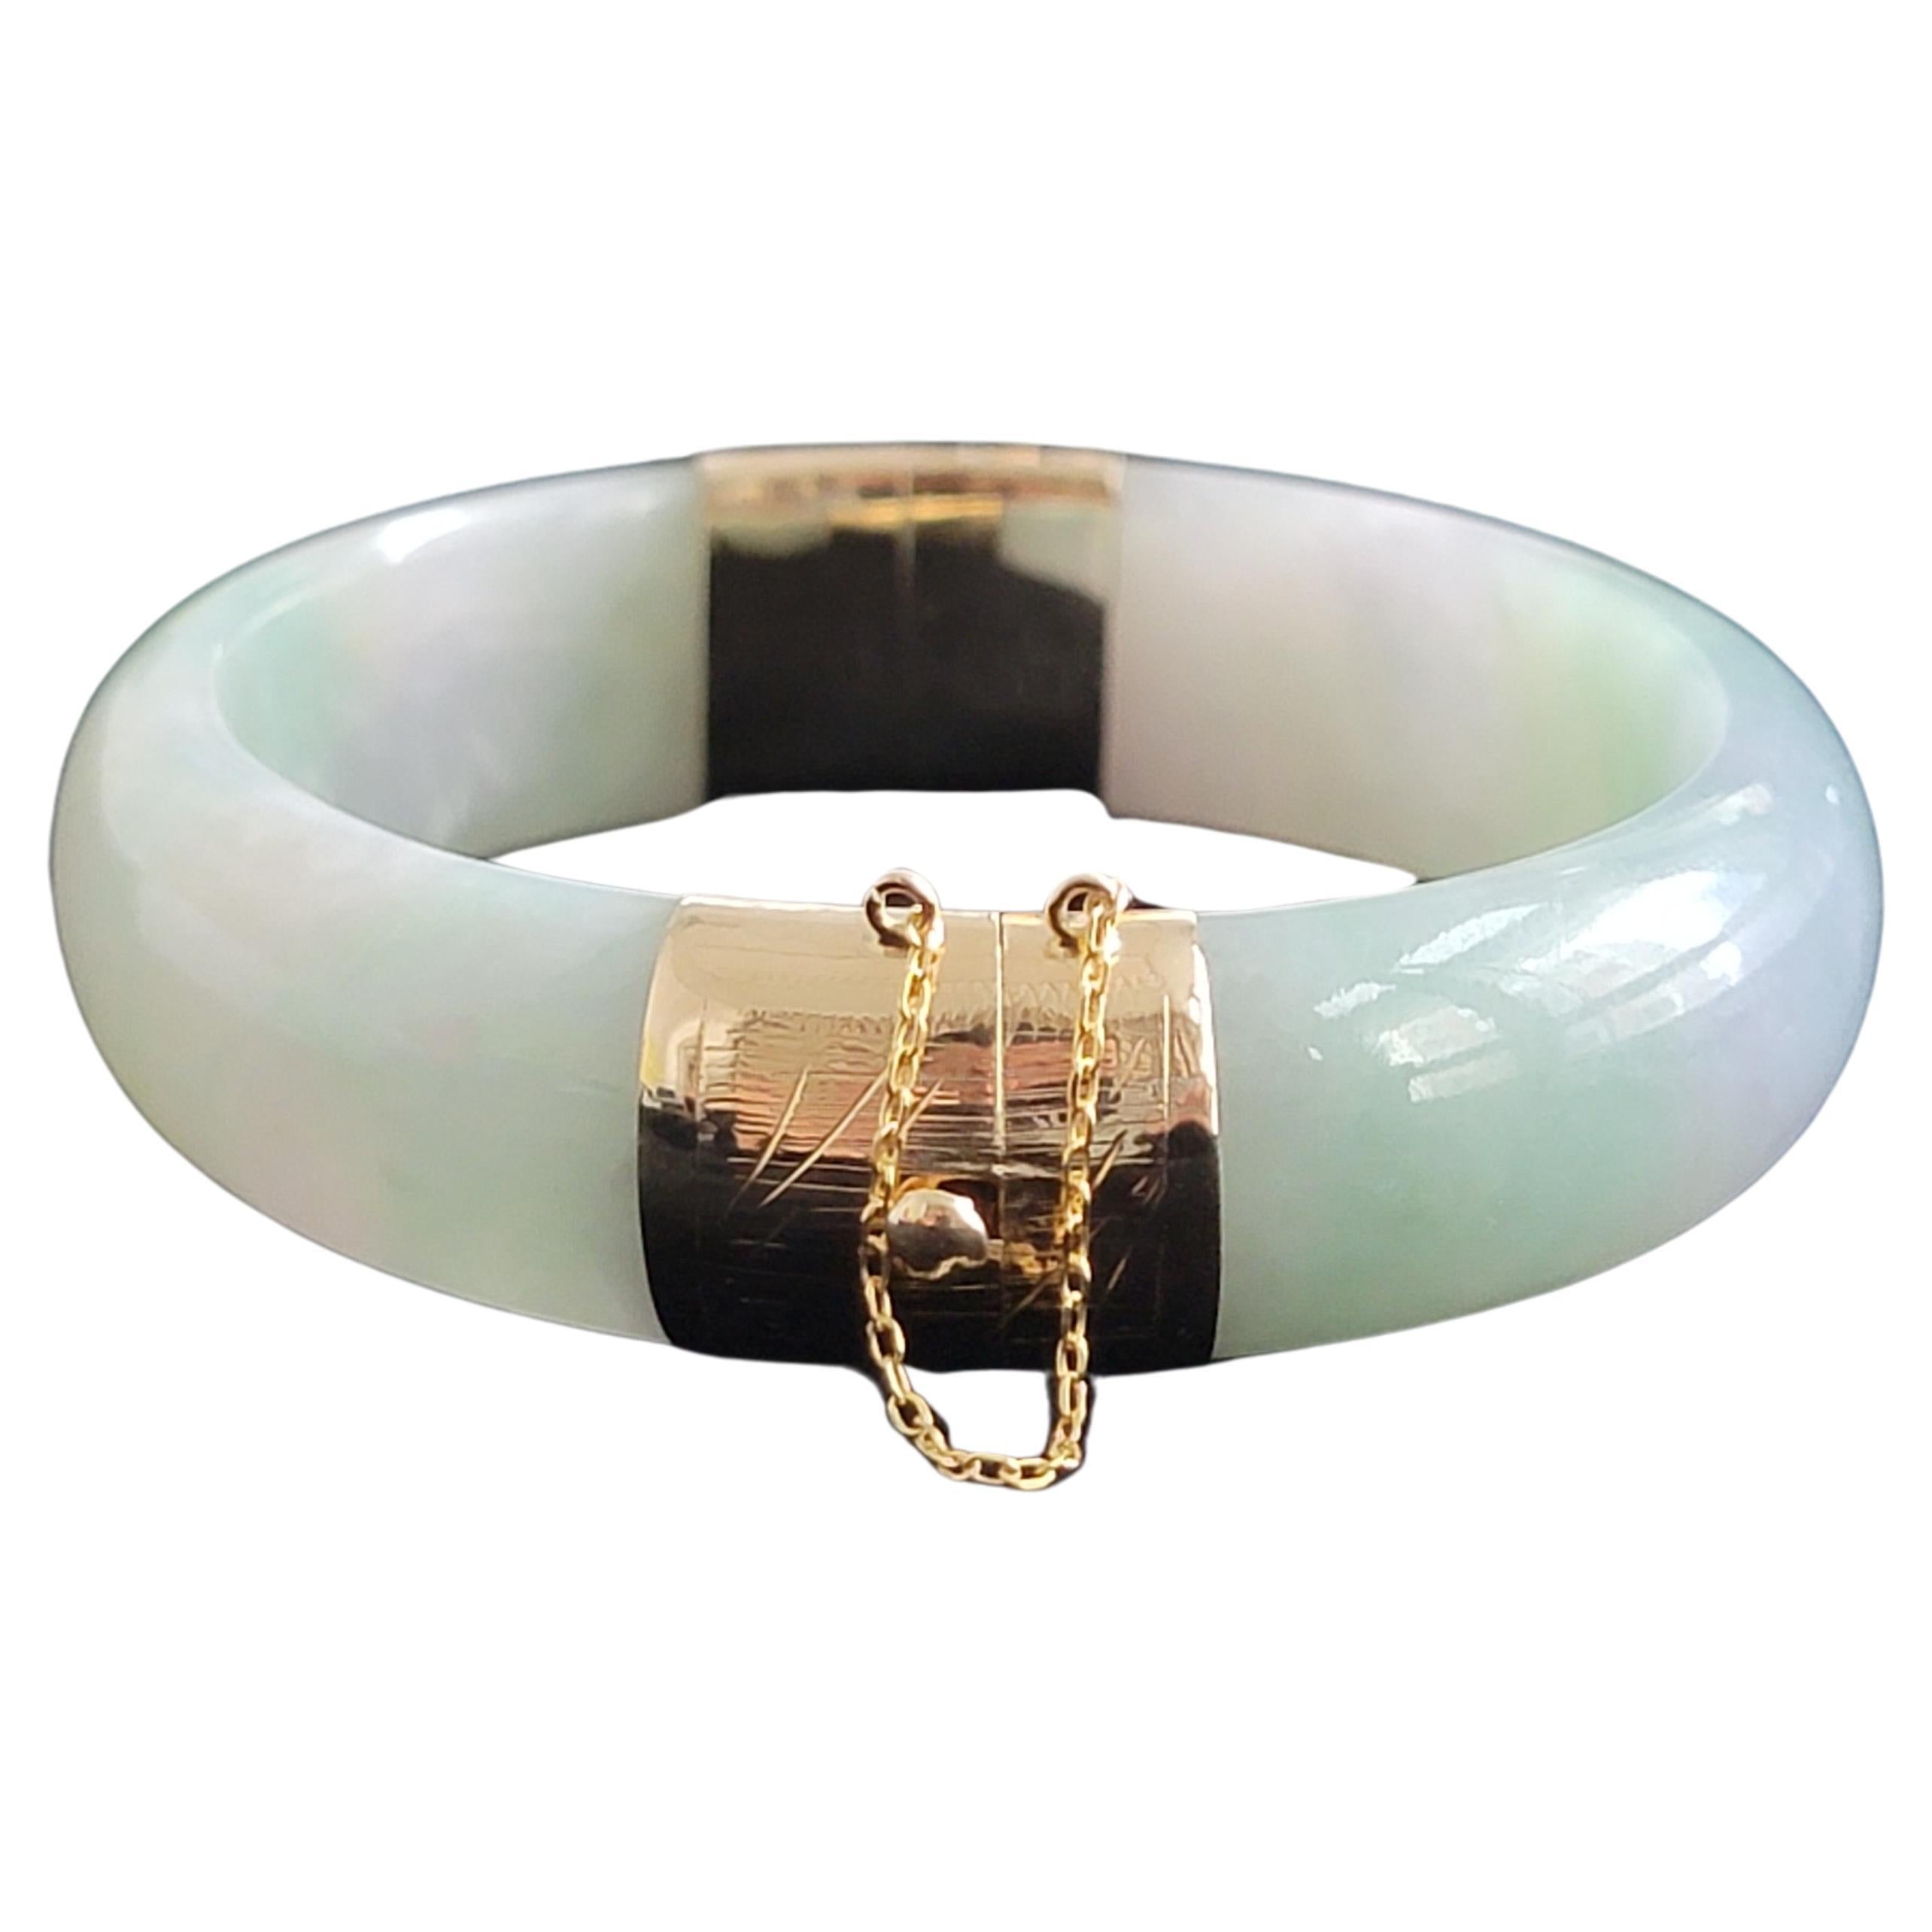 Viceroy's Elliptical Burmese A-Jade Bangle Bracelet (with 14K Gold)